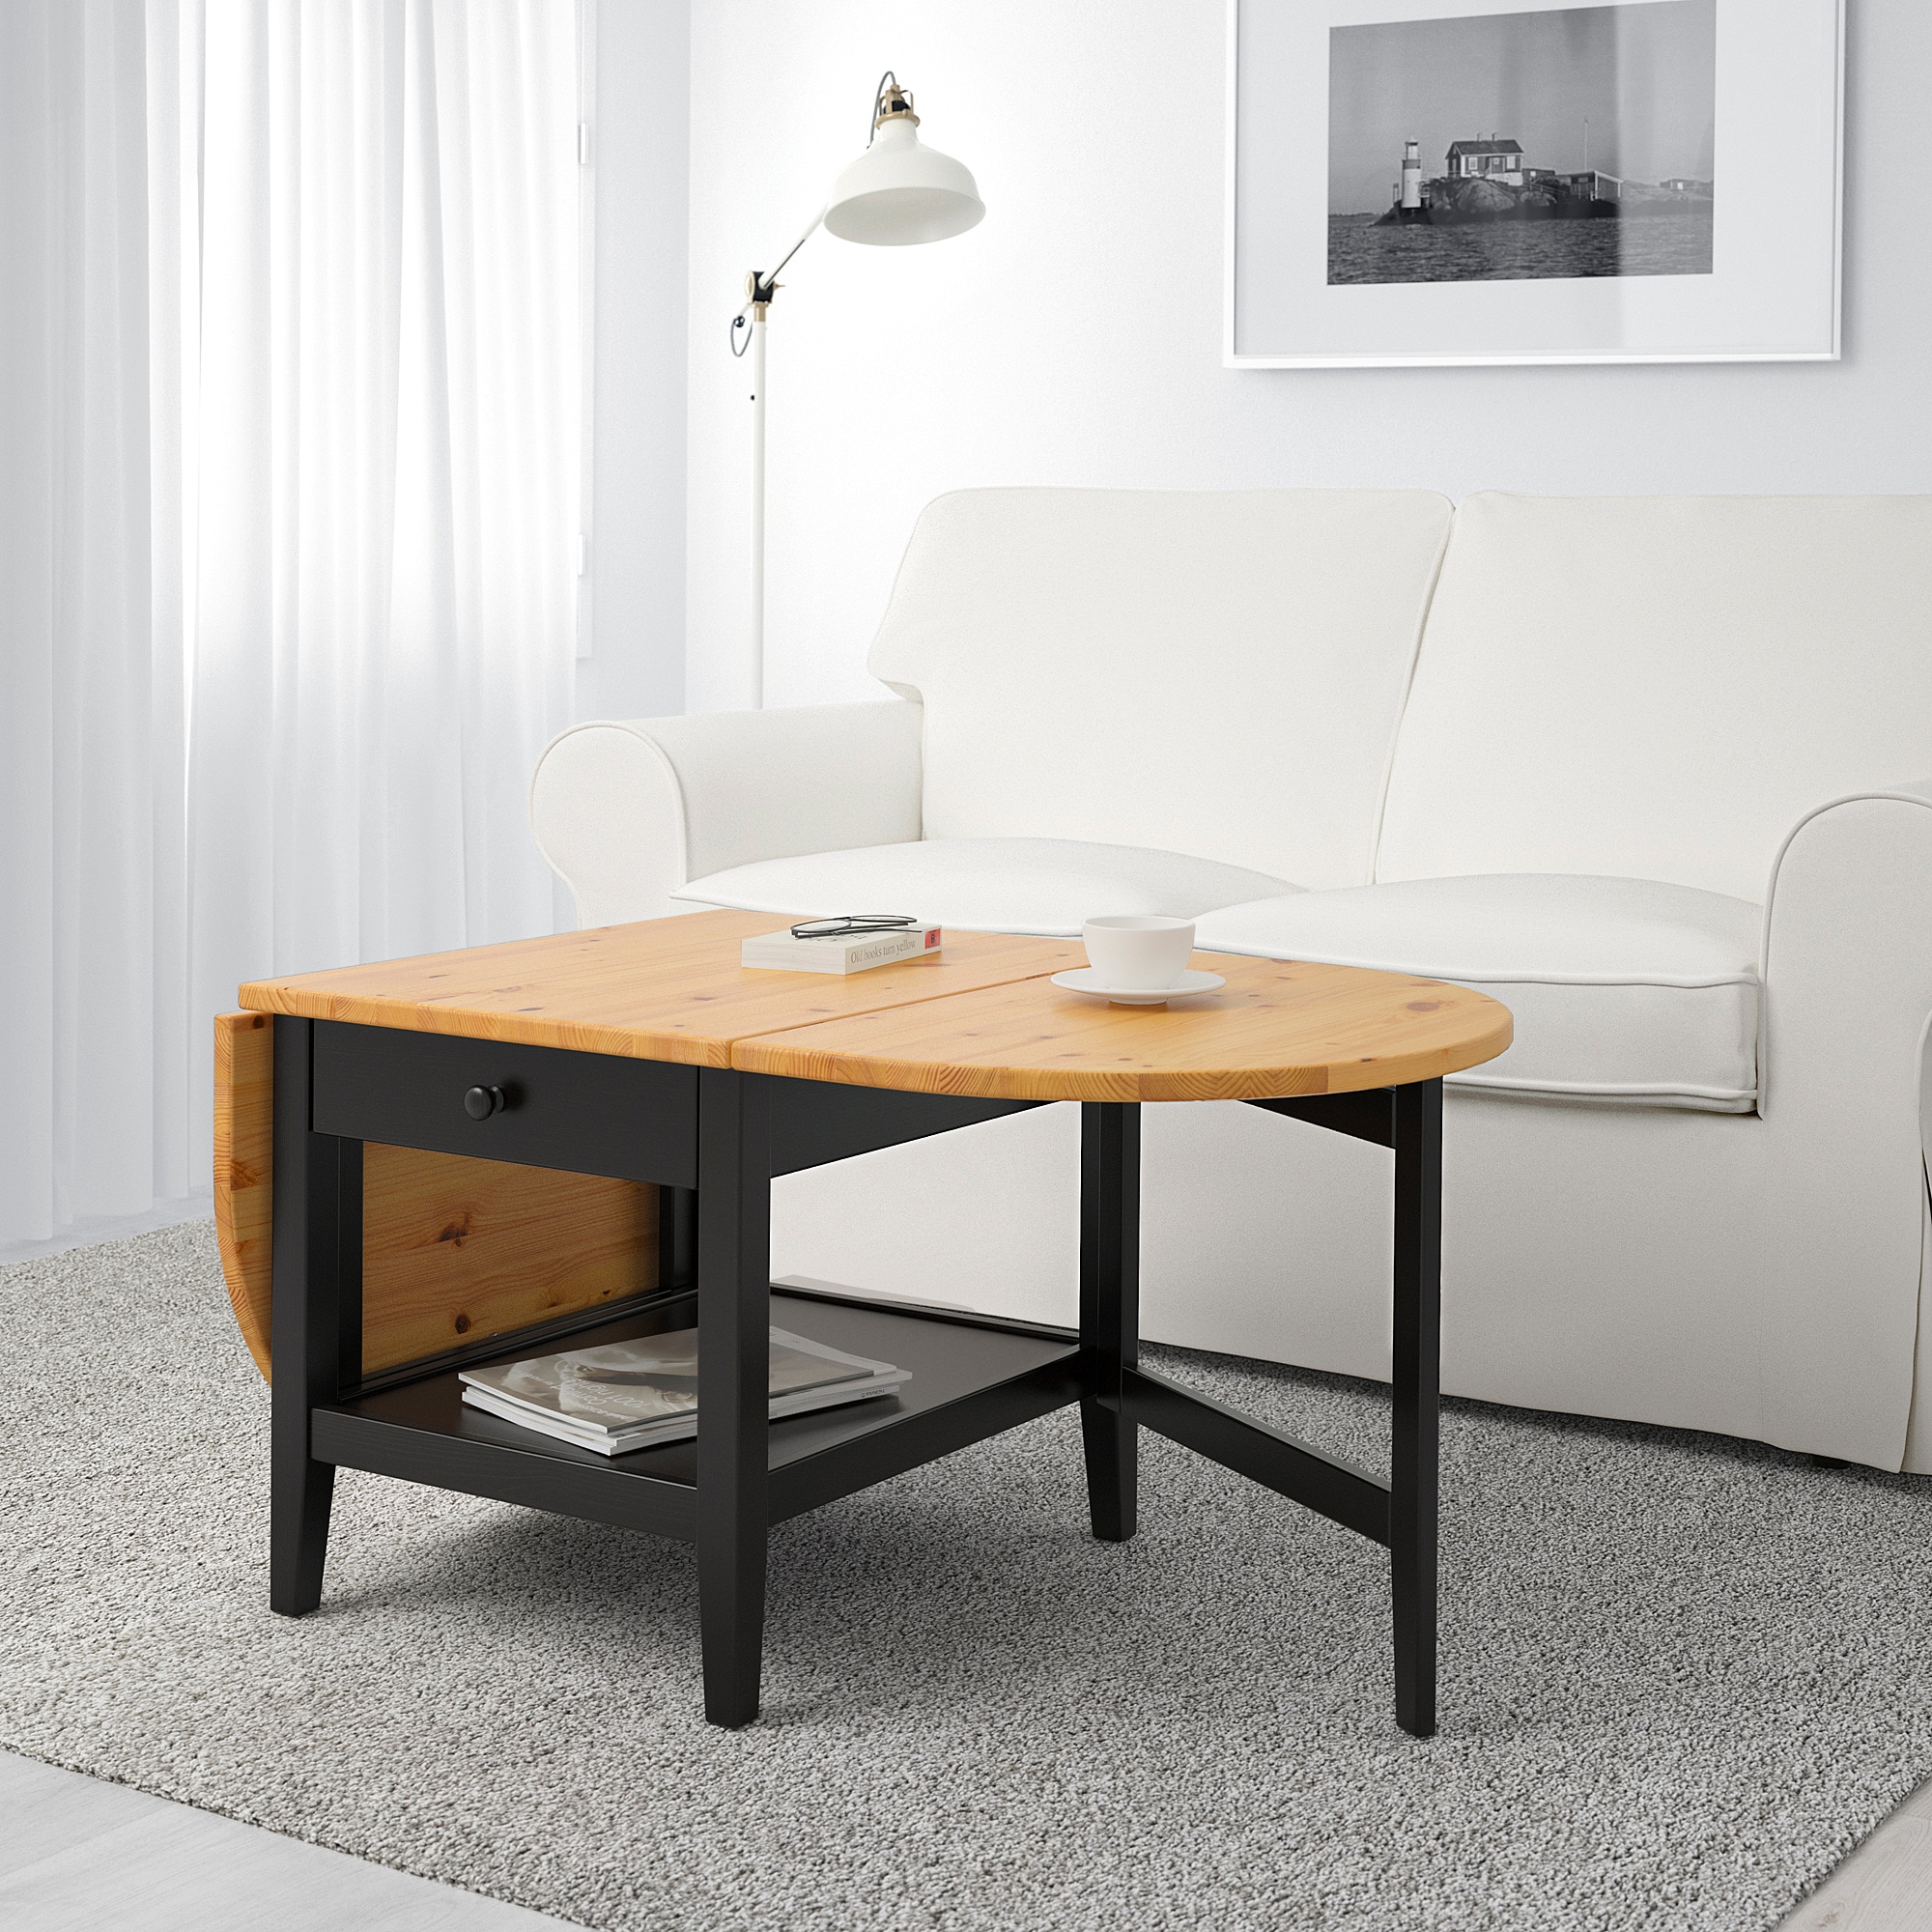 Столы в гостиную по цене от 25 в ИКЕА, купить недорогой столик - IKEA